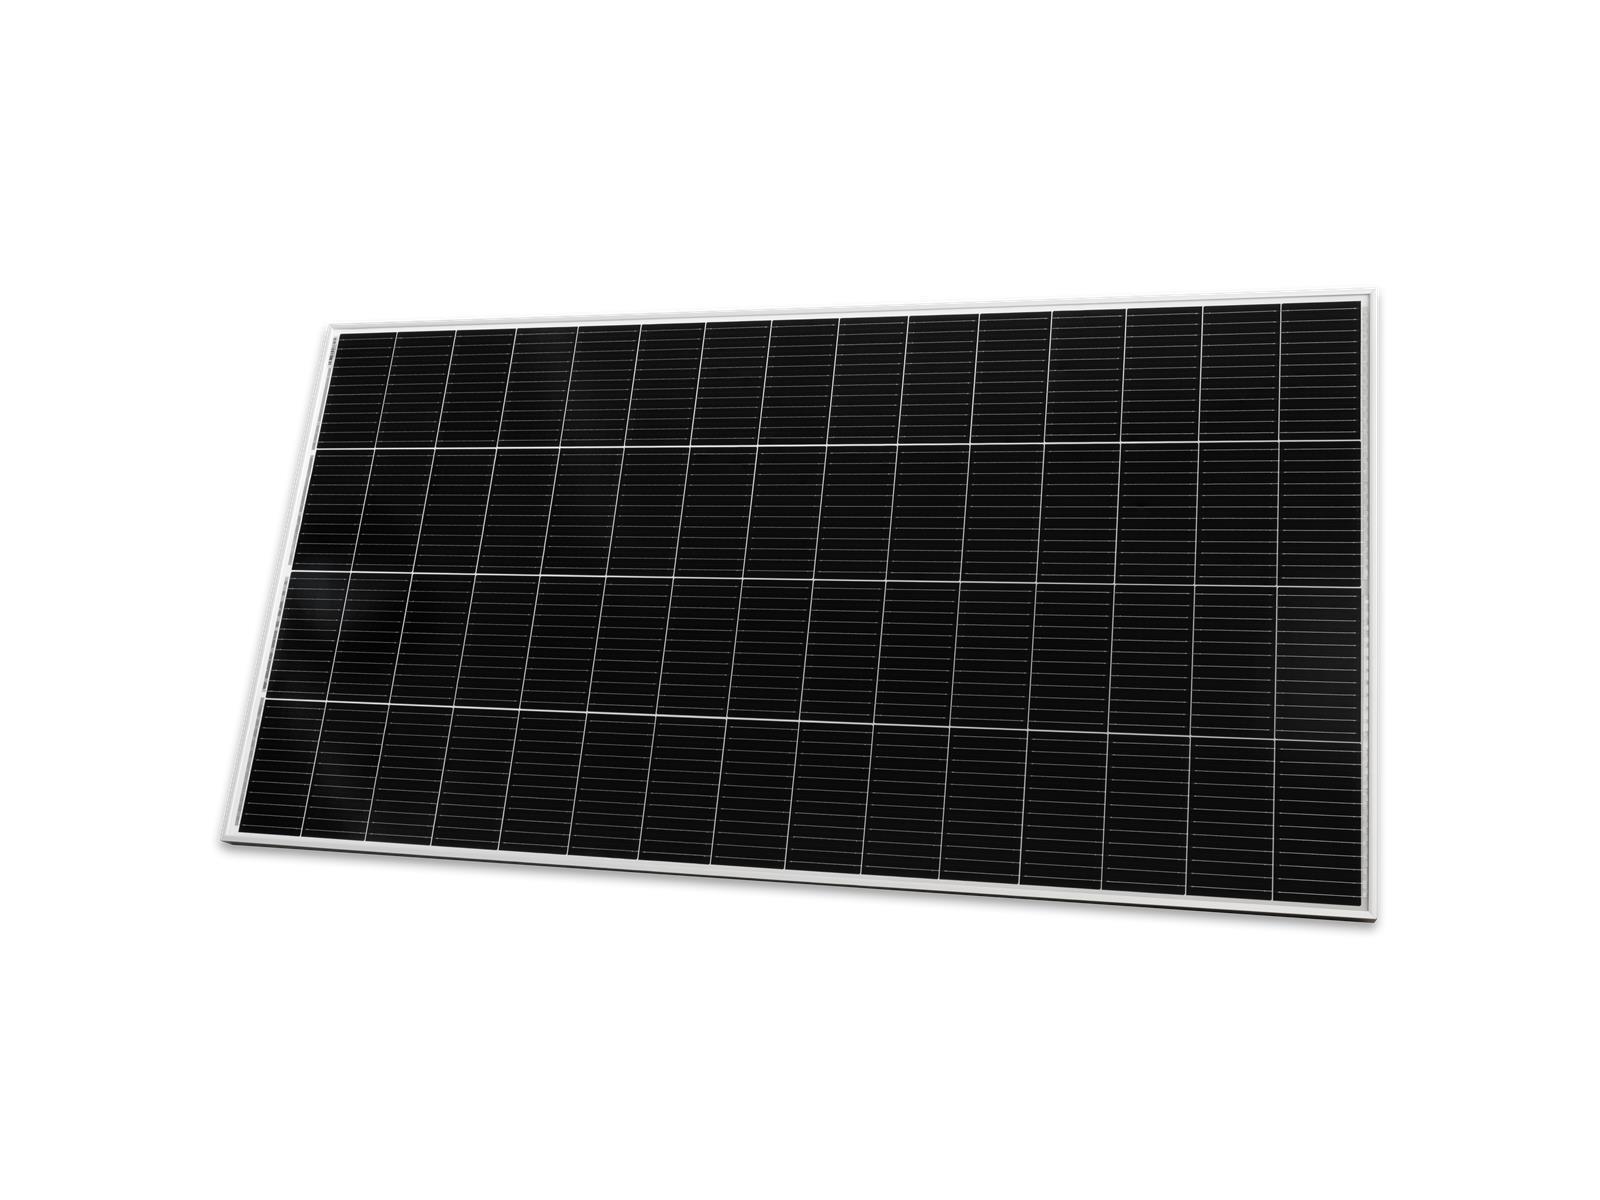 WIFI-Wechselrichter für Solarmodule McShine, 600W, App, 2m Kabel